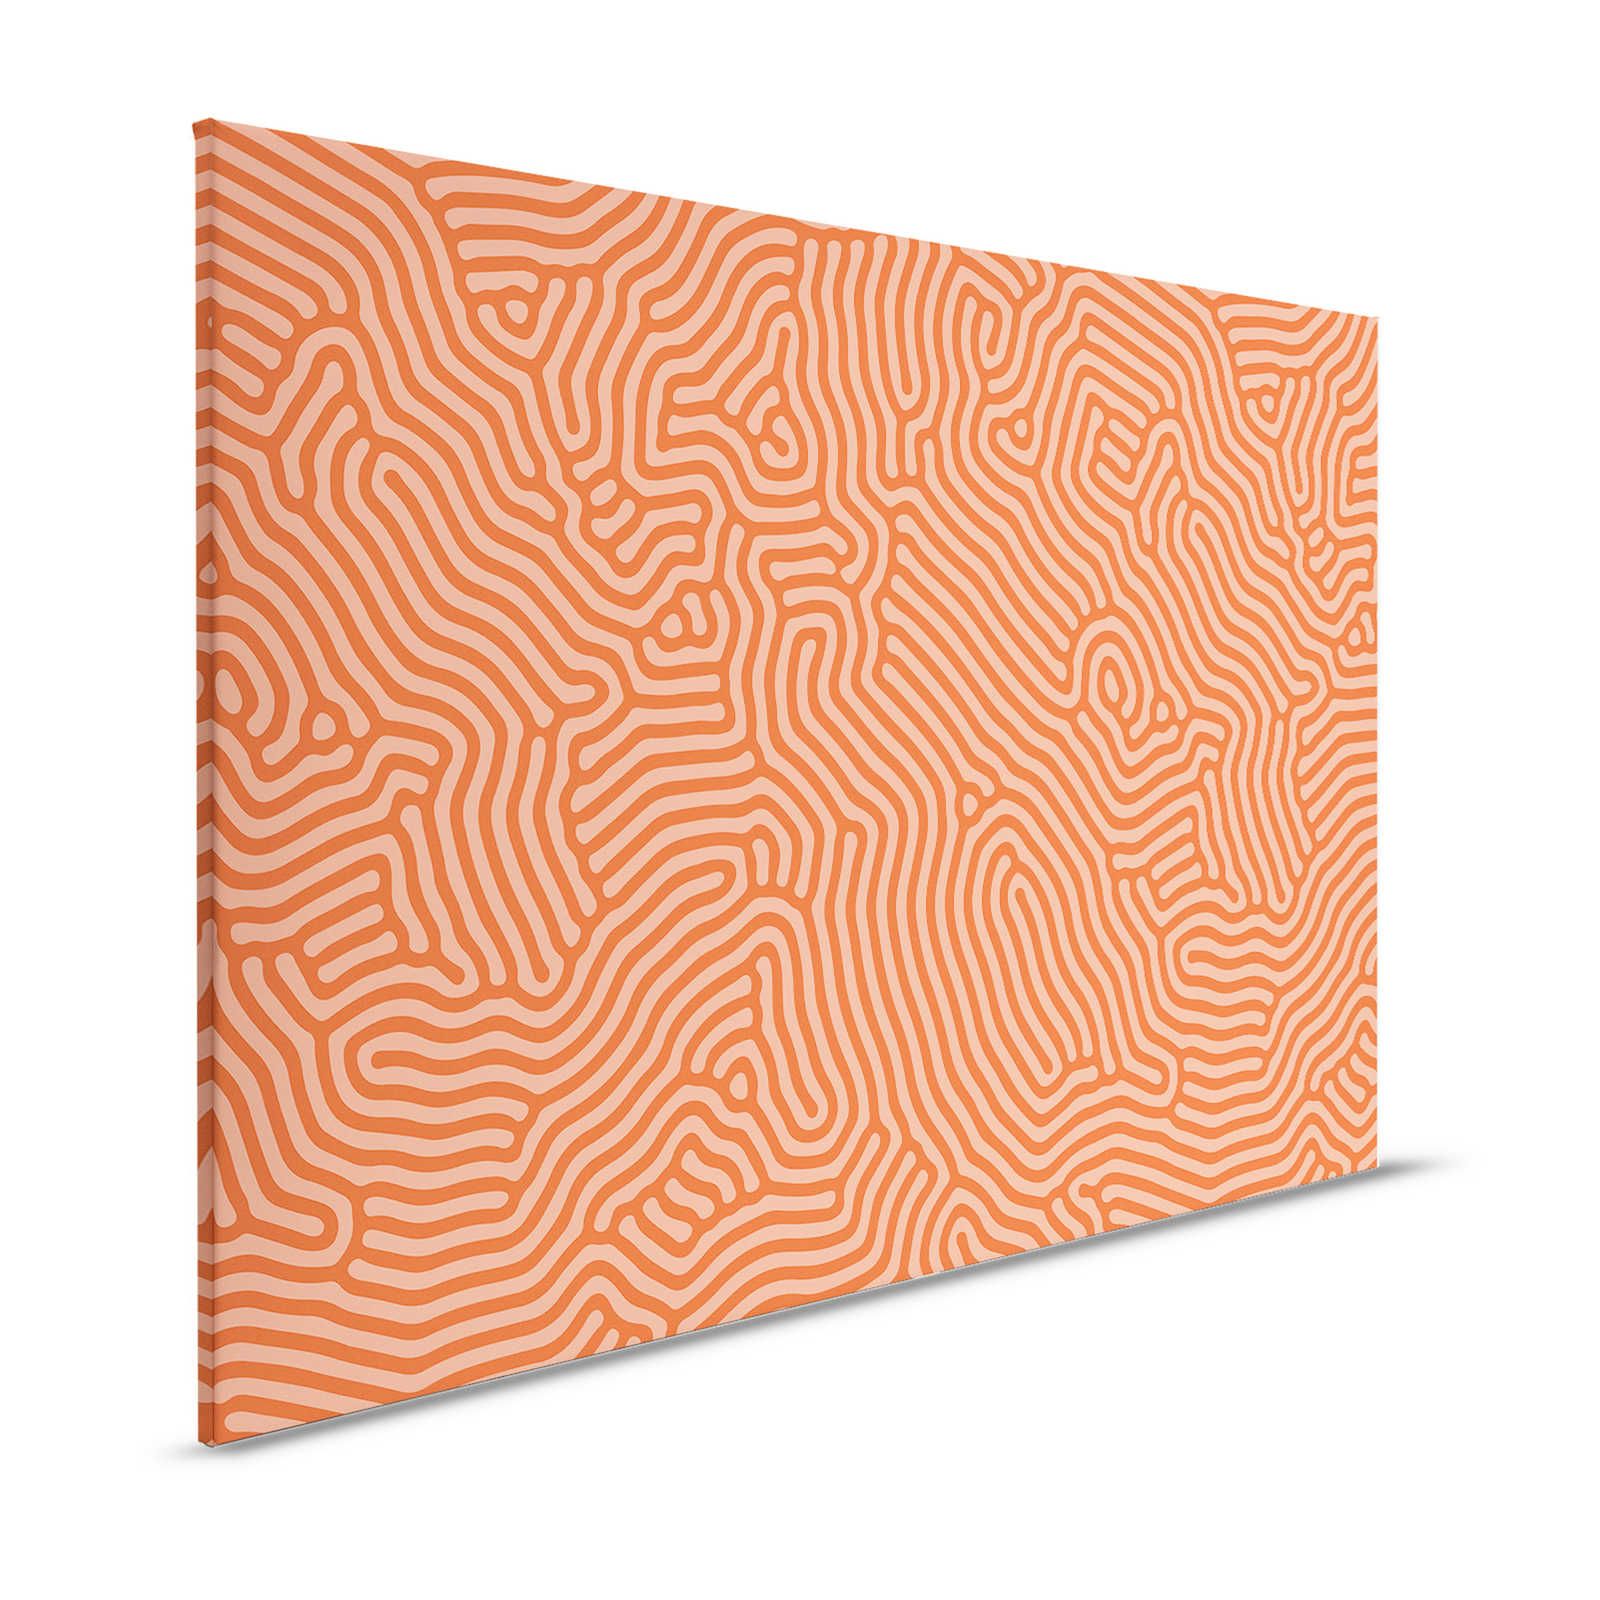 Sahel 3 - Rotes Leinwandbild mit organischem Linien-Muster – 1,20 m x 0,80 m
